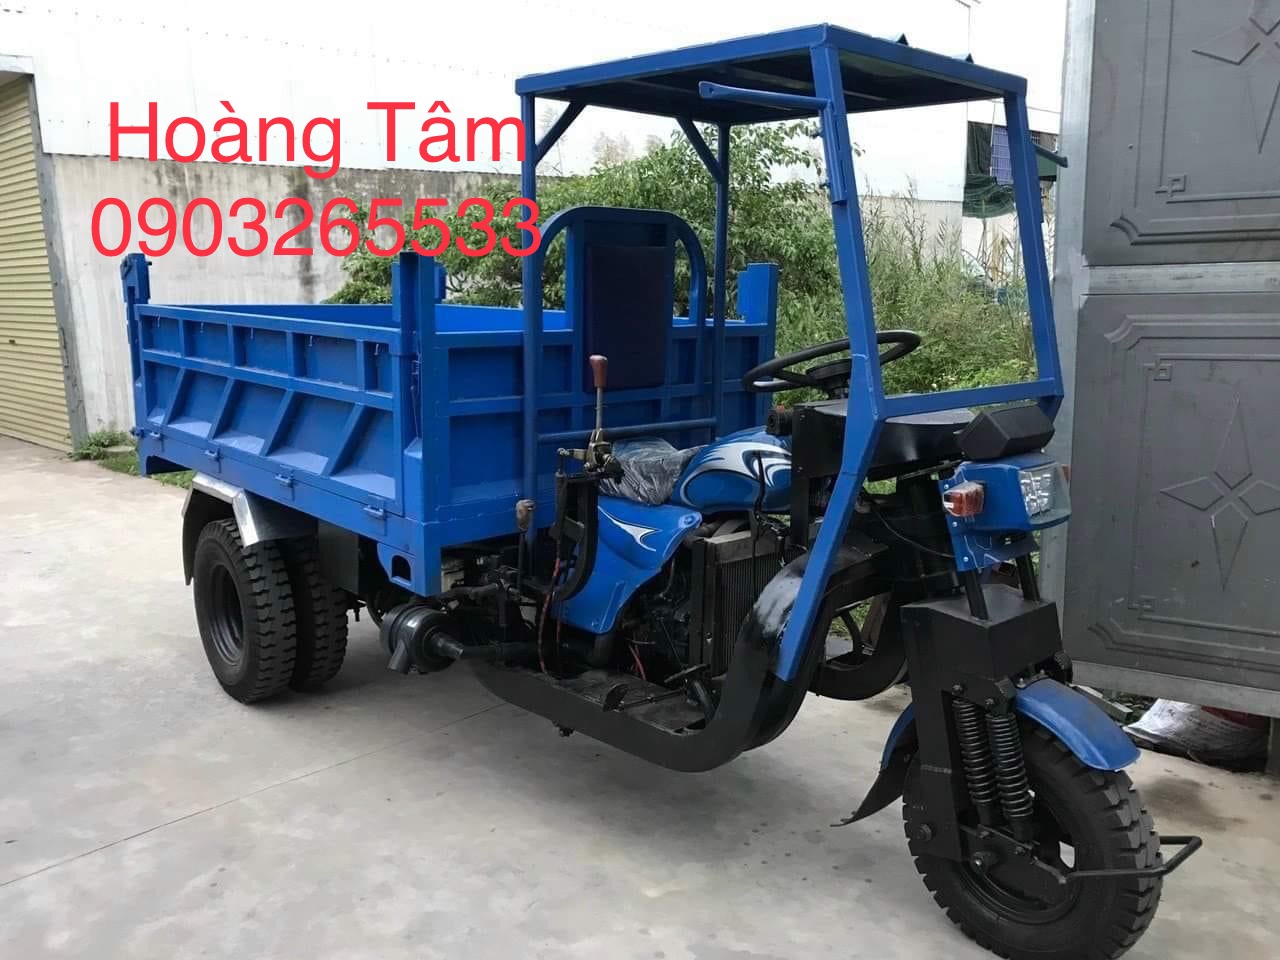 Mua xe ba gác - xe ba bánh - xe hoa lâm Tại Nam Định và TPHCM Giá Tốt - Chính Hãng